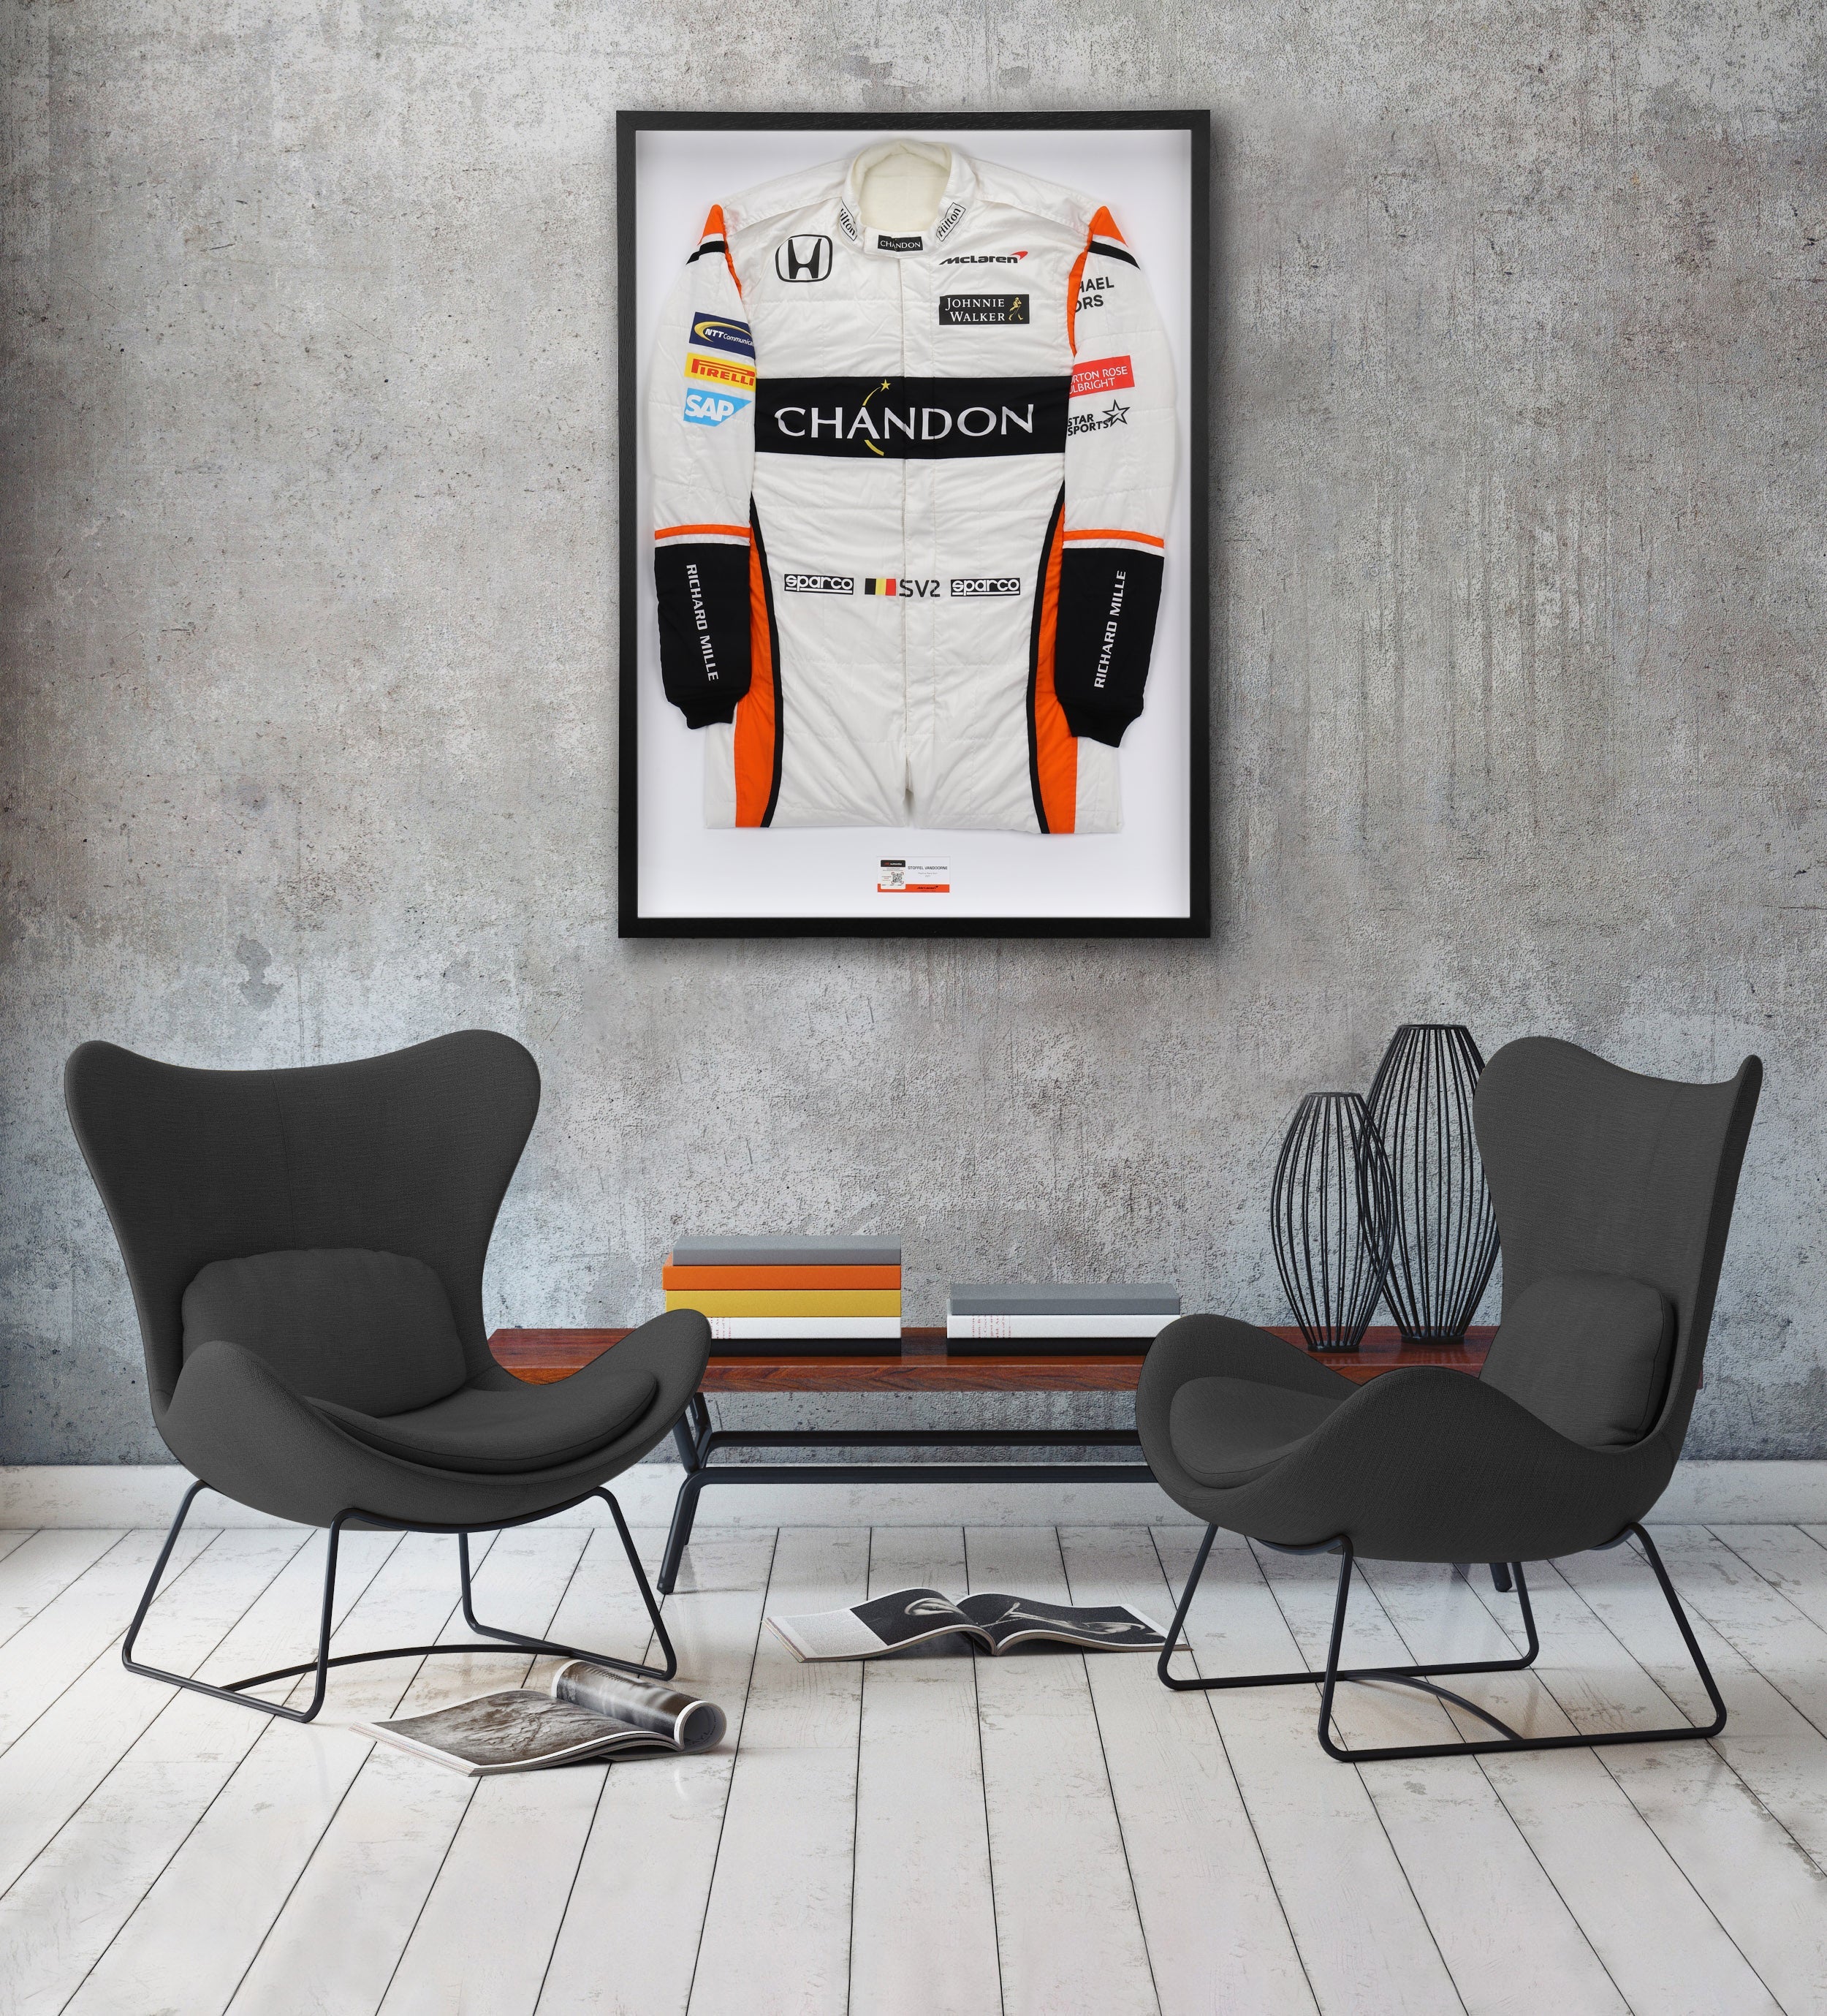 Stoffel Vandoorne 2017 Replica McLaren F1 Team Race Suit with Chandon Letter Branding